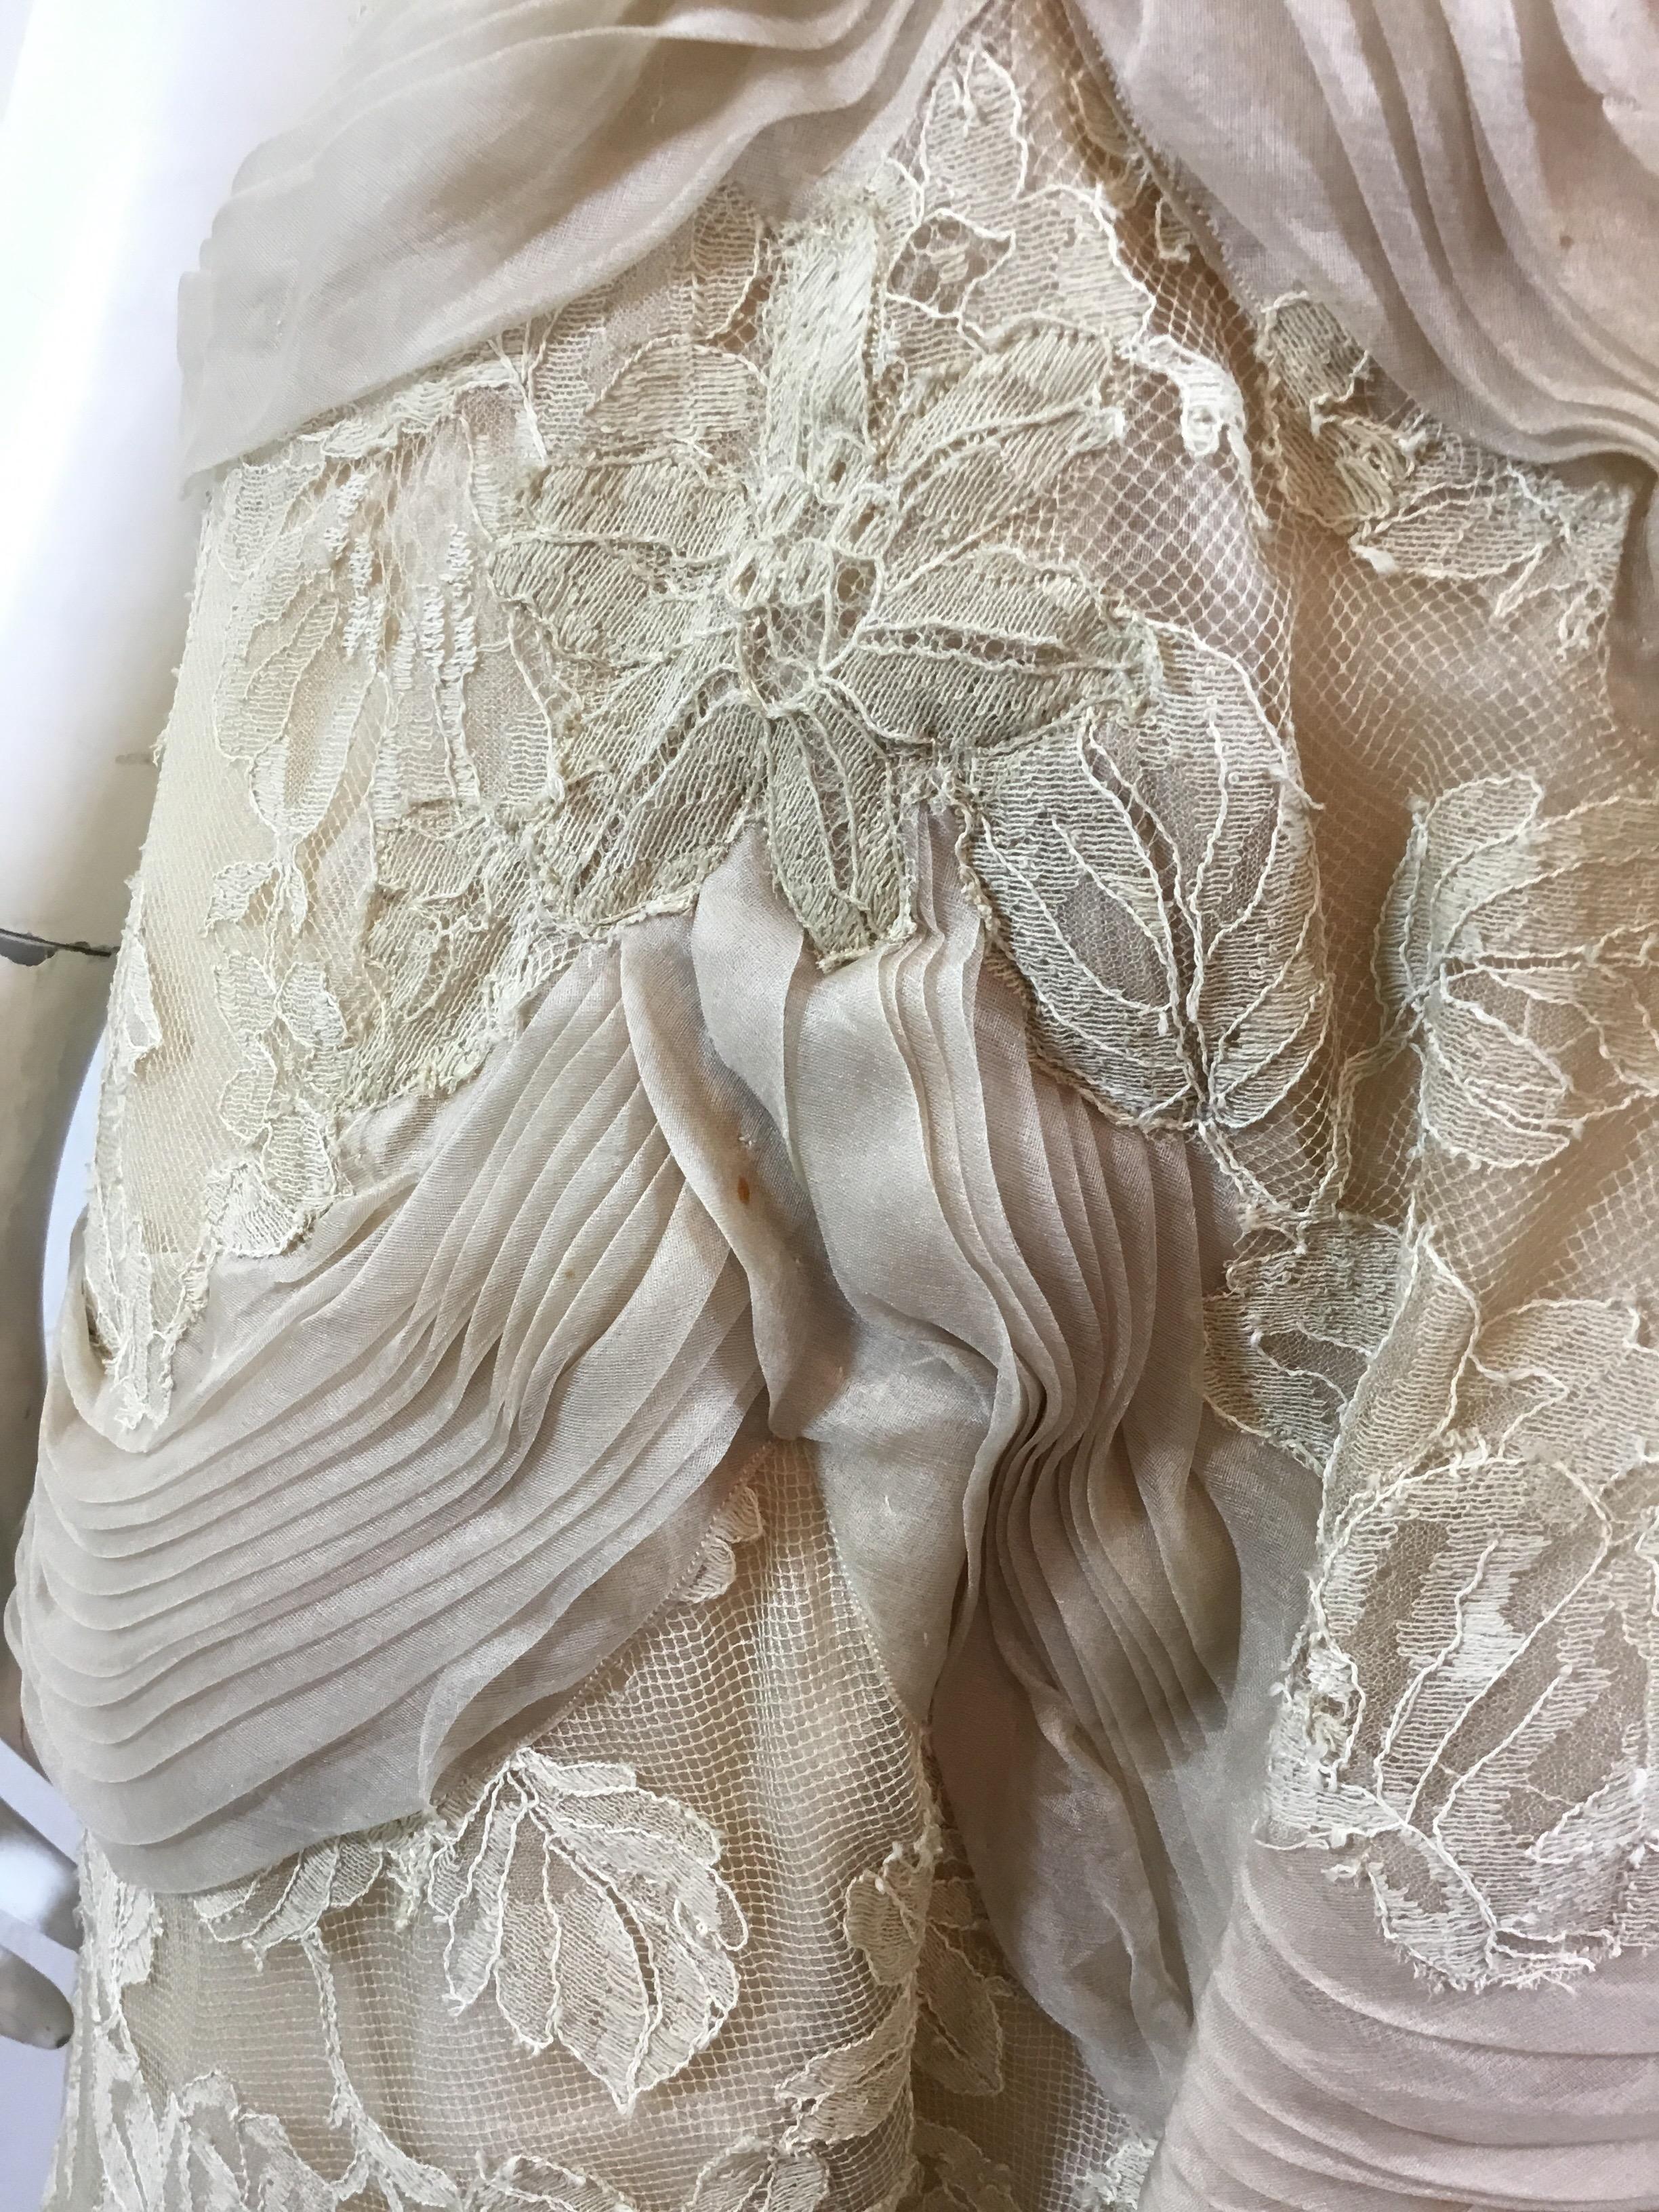 Beige Ceil Chapman Lace Vintage Dress For Sale